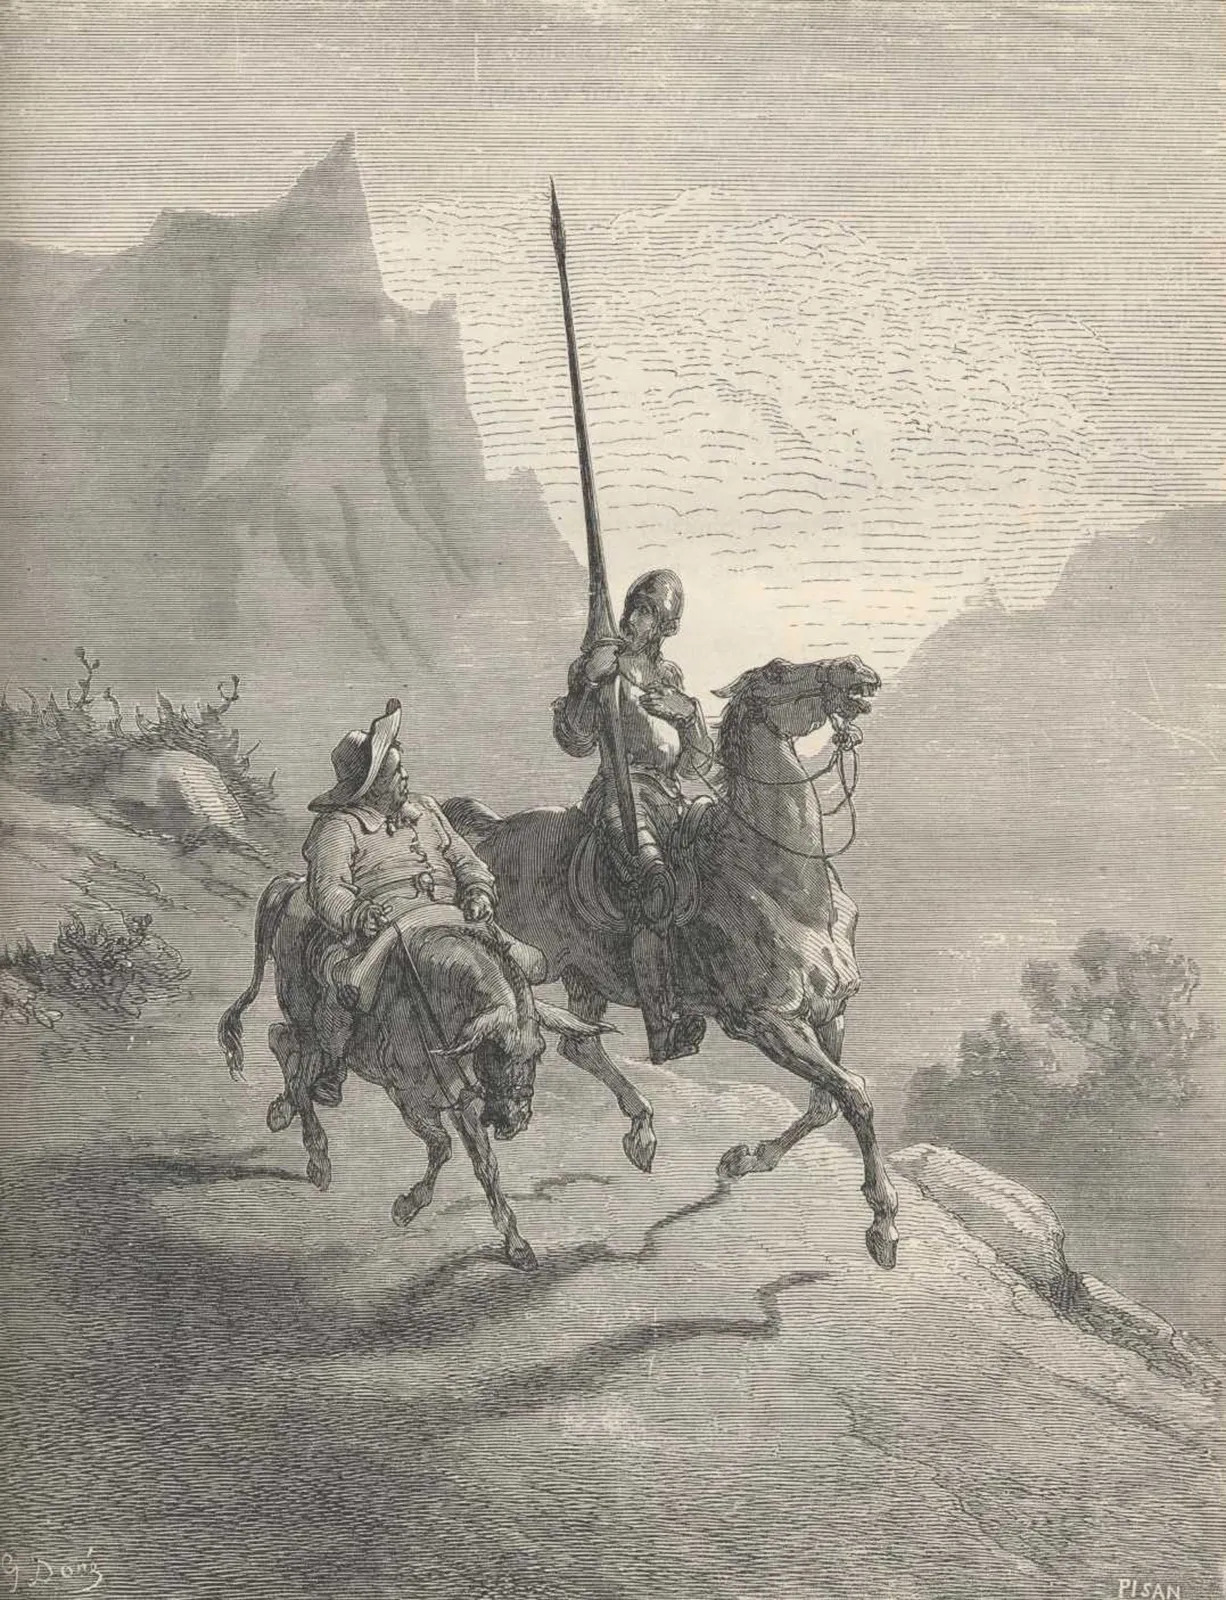 Don-Quixote-Sancho-Panza-illustration-Miguel-de britannica.jpg